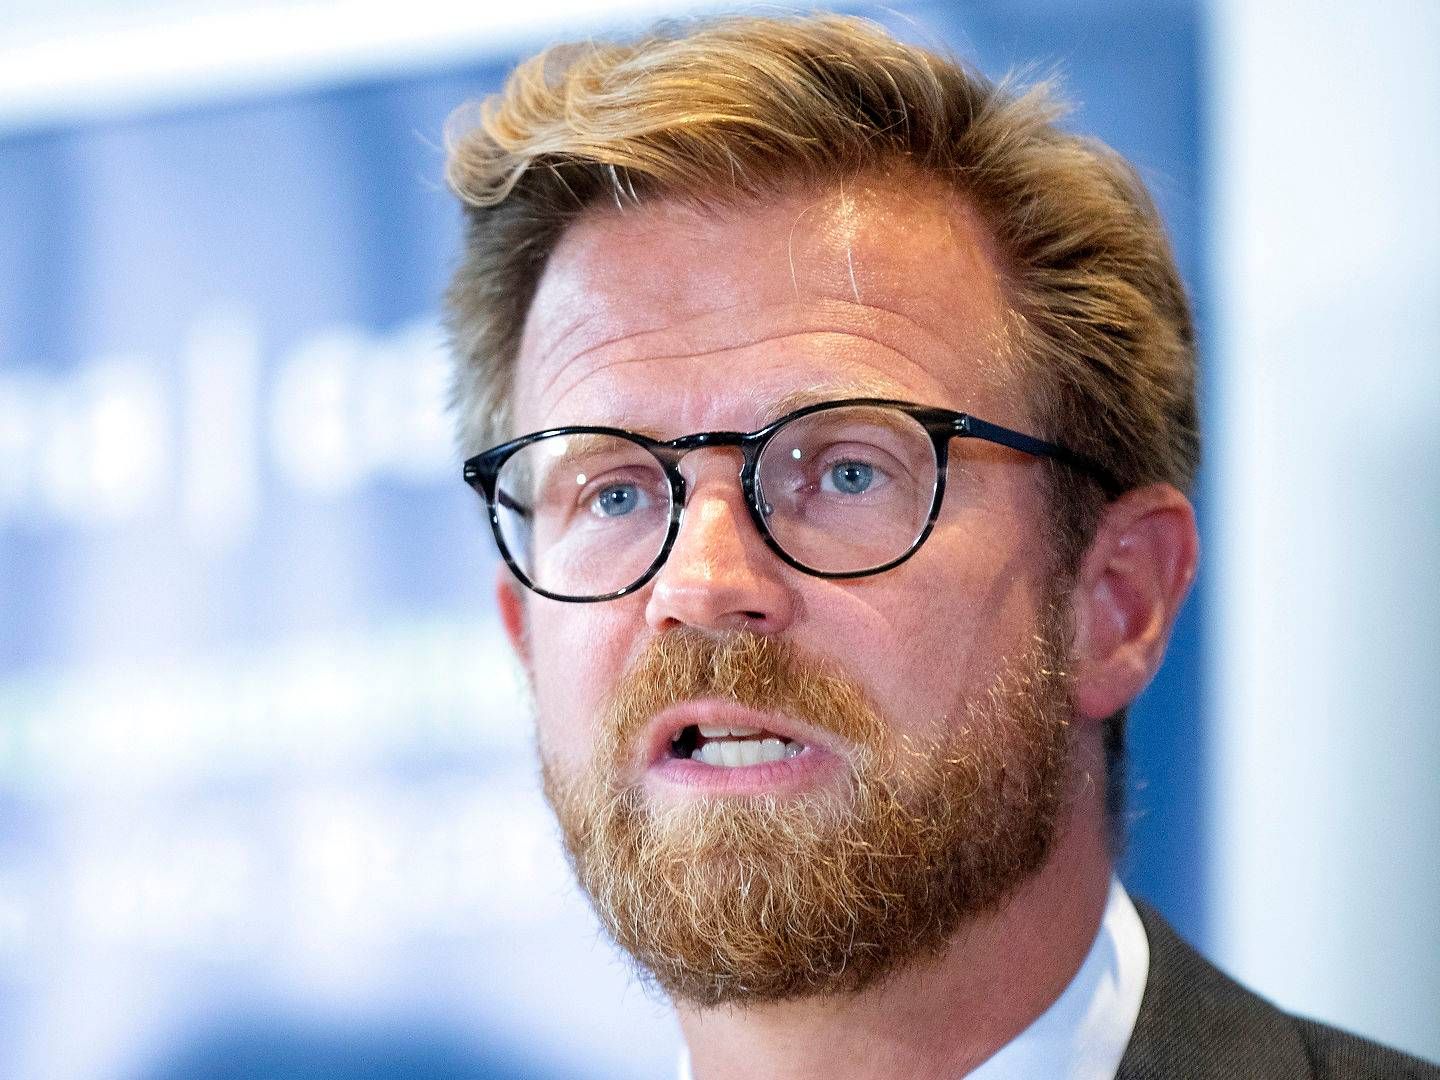 Transportminister Benny Engelbrecht (S) vil nu holde møder med Enhedslisten, Radikale Venstre og SF. | Foto: Finn Frandsen/Ritzau Scanpix